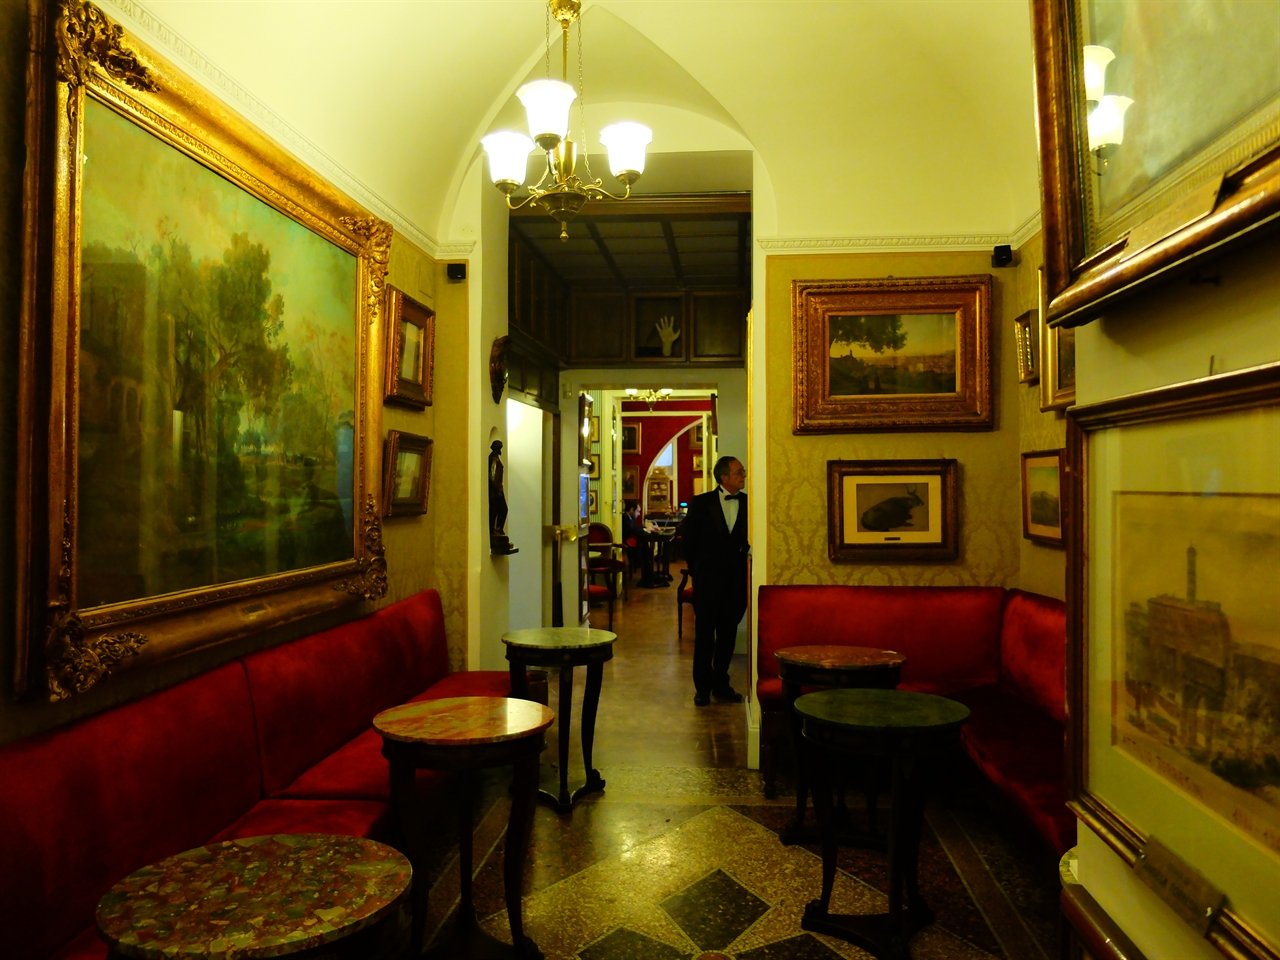 전통이 느껴지는 안티코 카페 그레코의 실내. 자리마다 역사와 예술이 스며들어 있습니다.